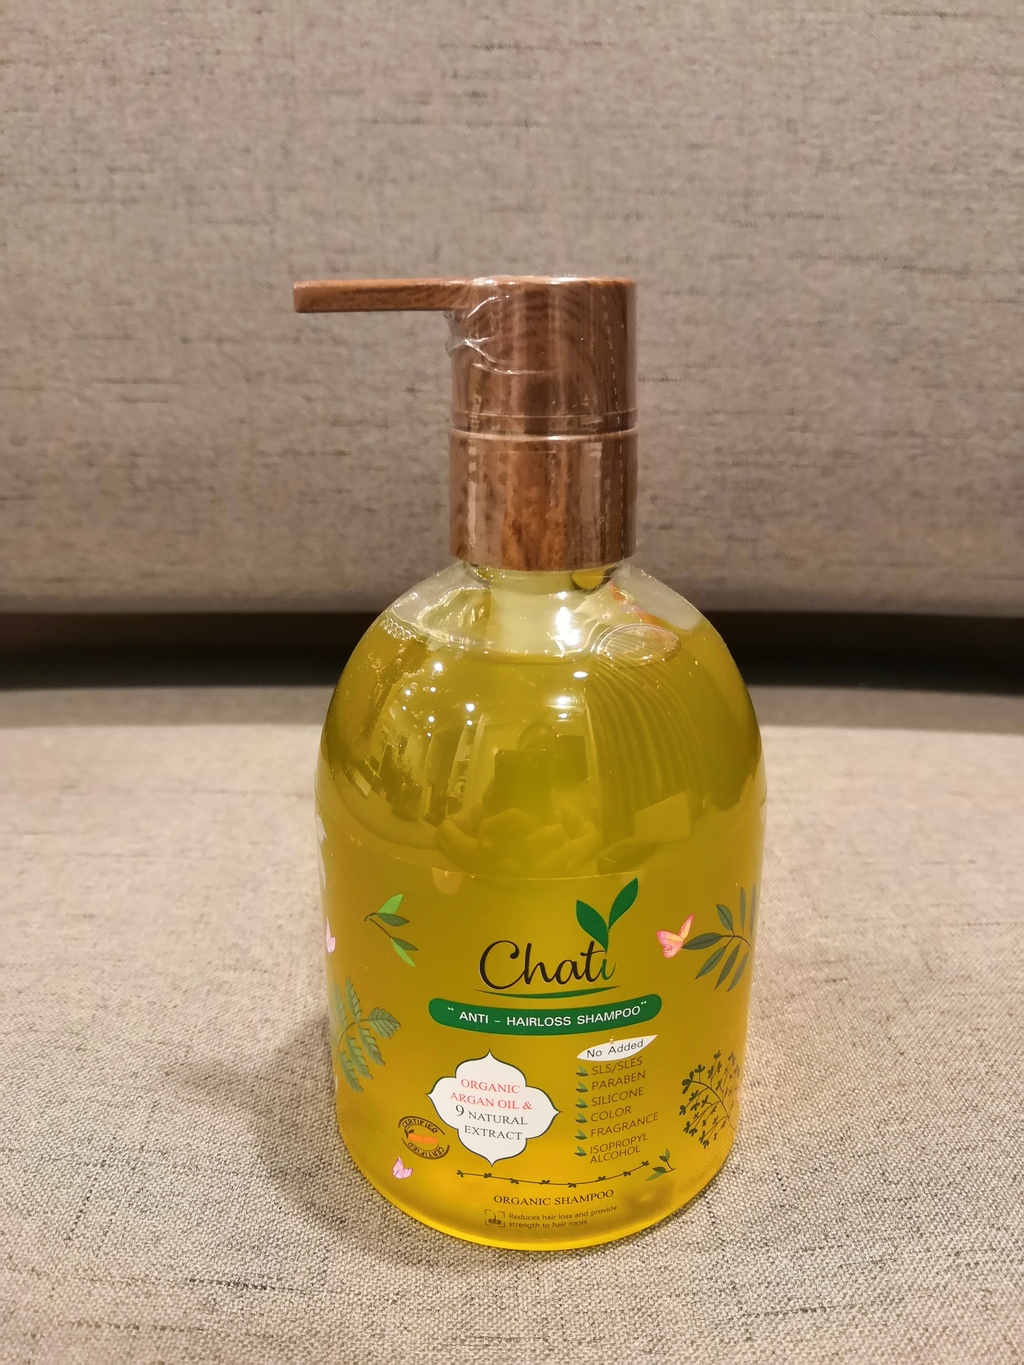 Chati Anti-Hairloss shampoo 300ml ฌาฏิแชมพู ลดผมขาดหลุดร่วง รีวิว